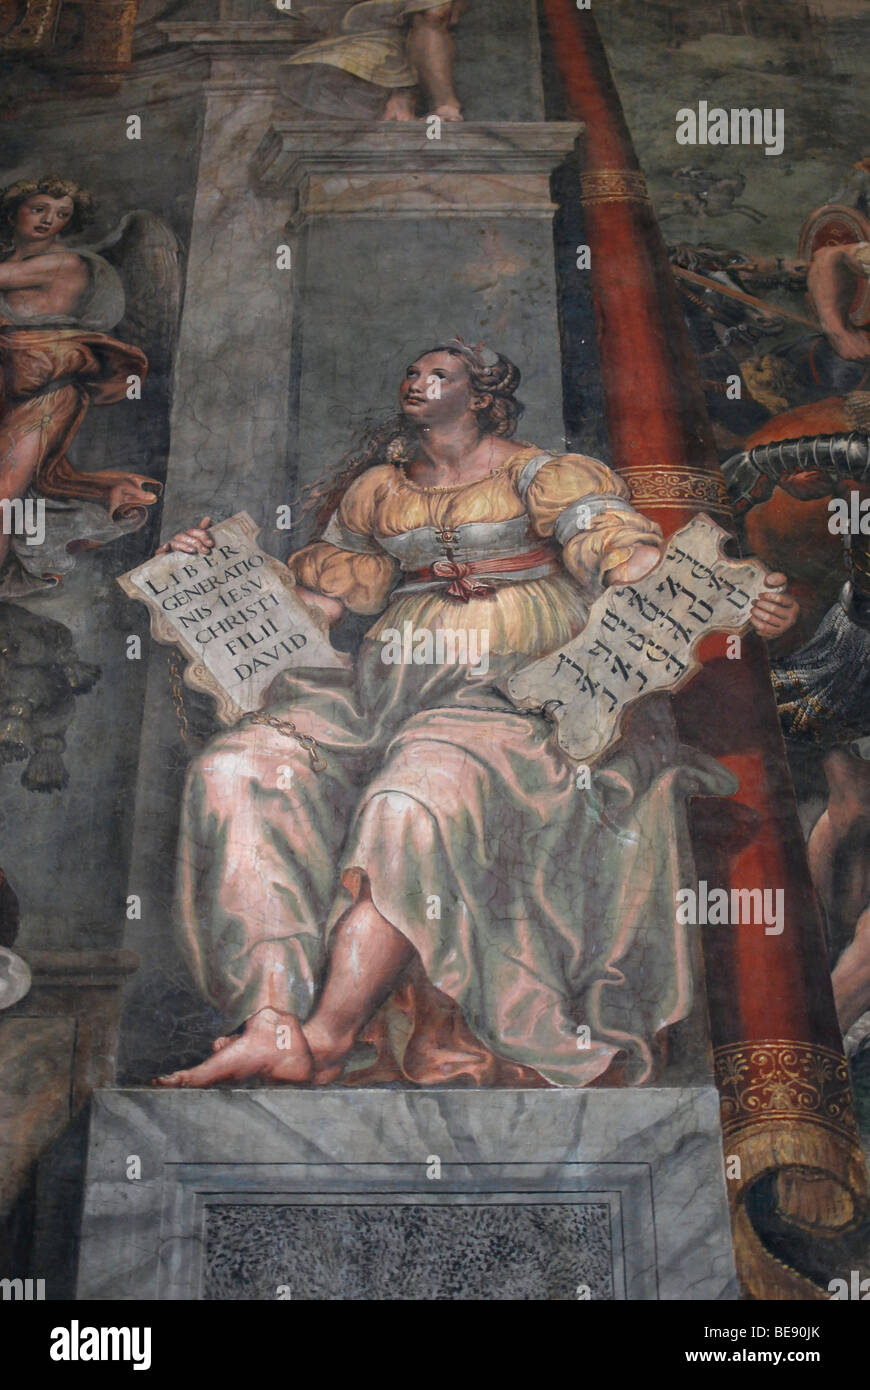 Dettaglio del dipinto la battaglia di Ponte Milvian nella Sala di Costantino, donna seduta, camere del Vaticano, Musei Vaticani, Foto Stock